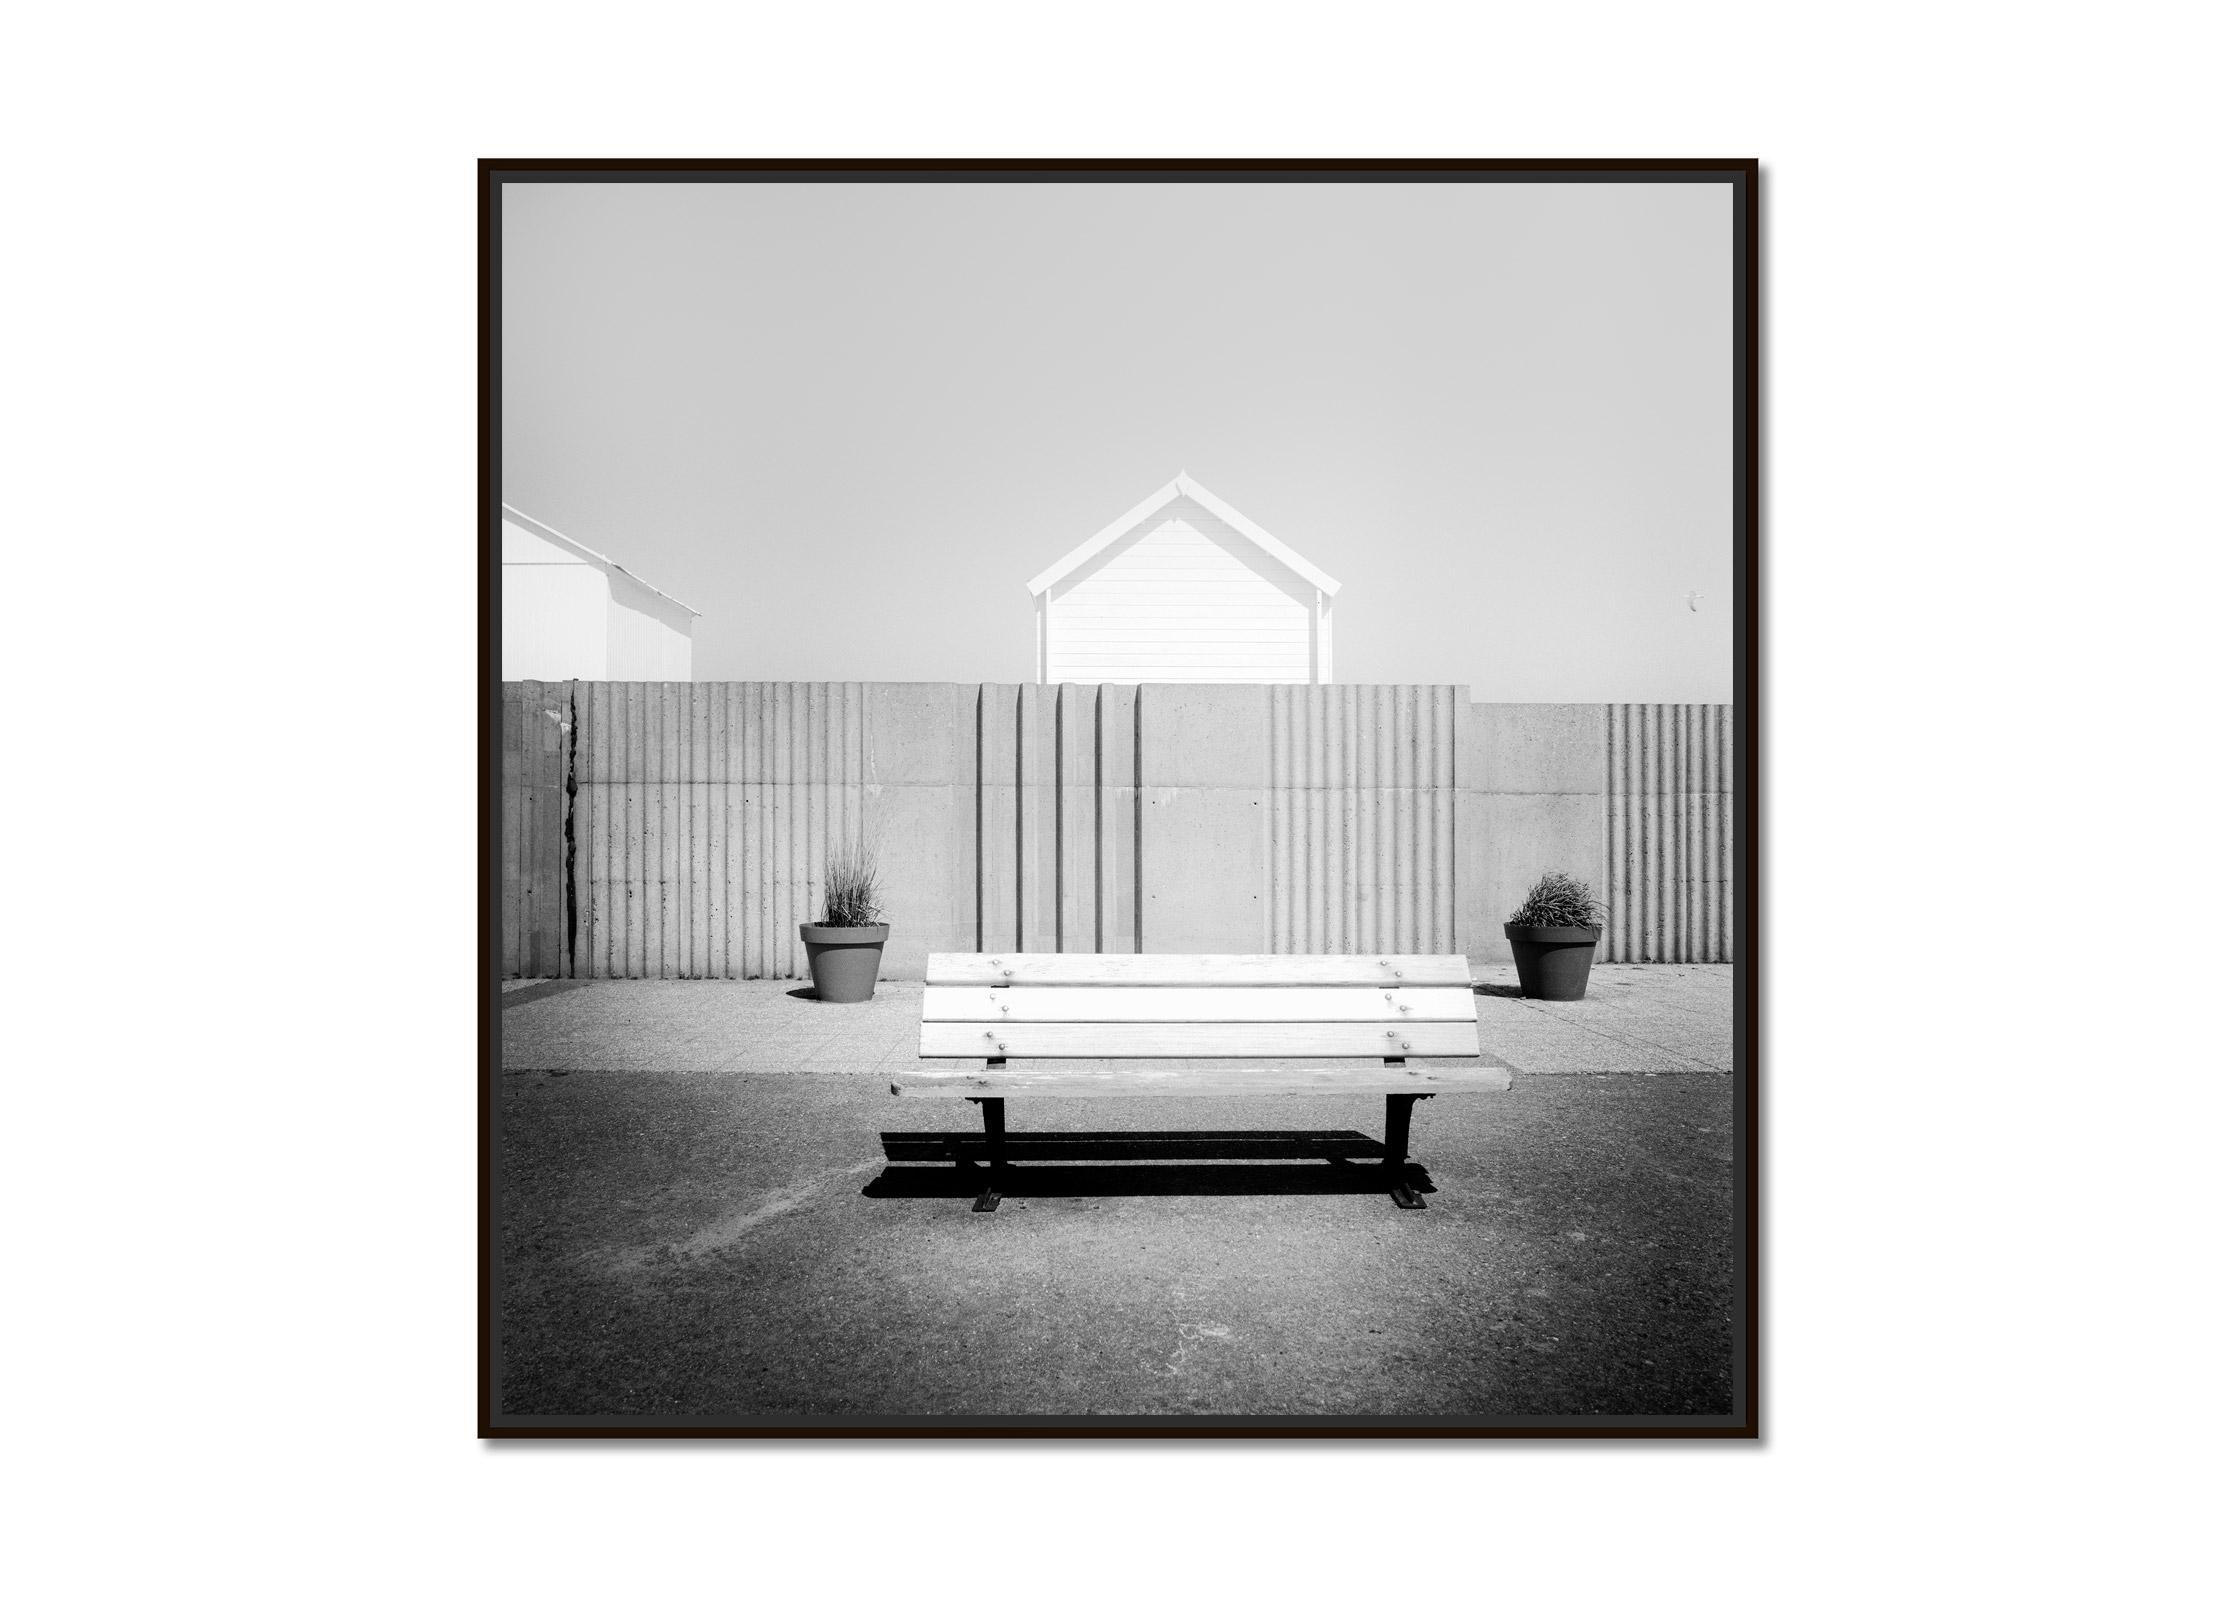 Esplanade, vie de plage, France, noir et blanc, art paysage, photographie - Photograph de Gerald Berghammer